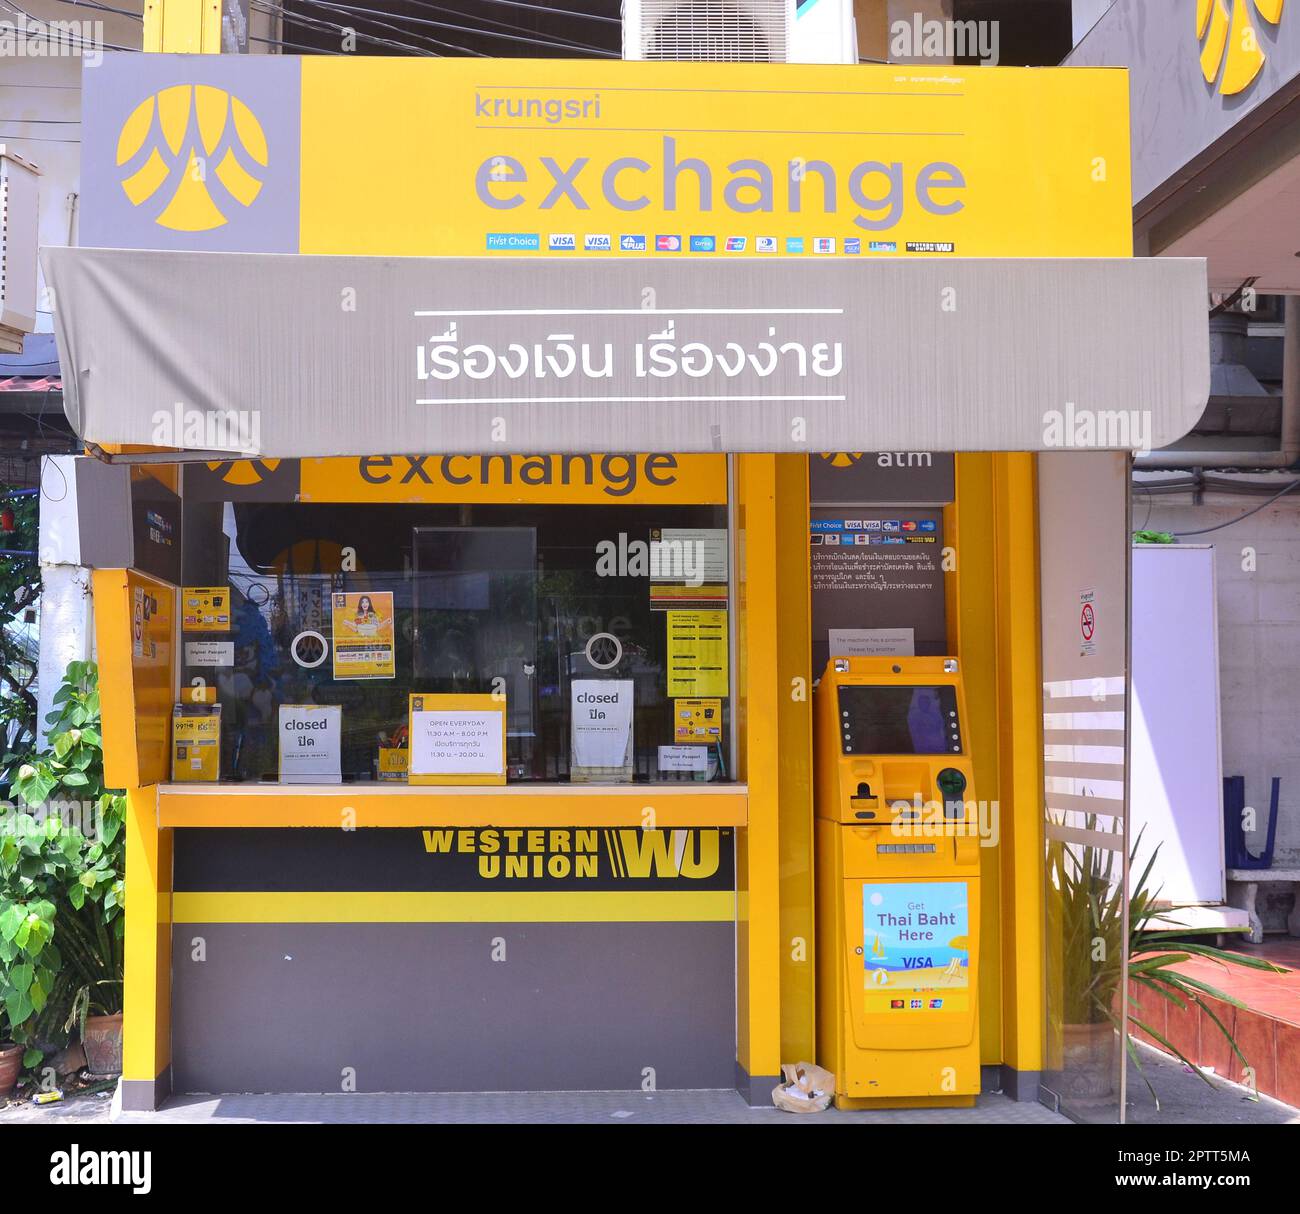 Un guichet ou une boutique de change ou de change de devises, géré par la Krungsri Bank, où les gens peuvent changer de devises en Thaïlande, en Asie. Banque D'Images